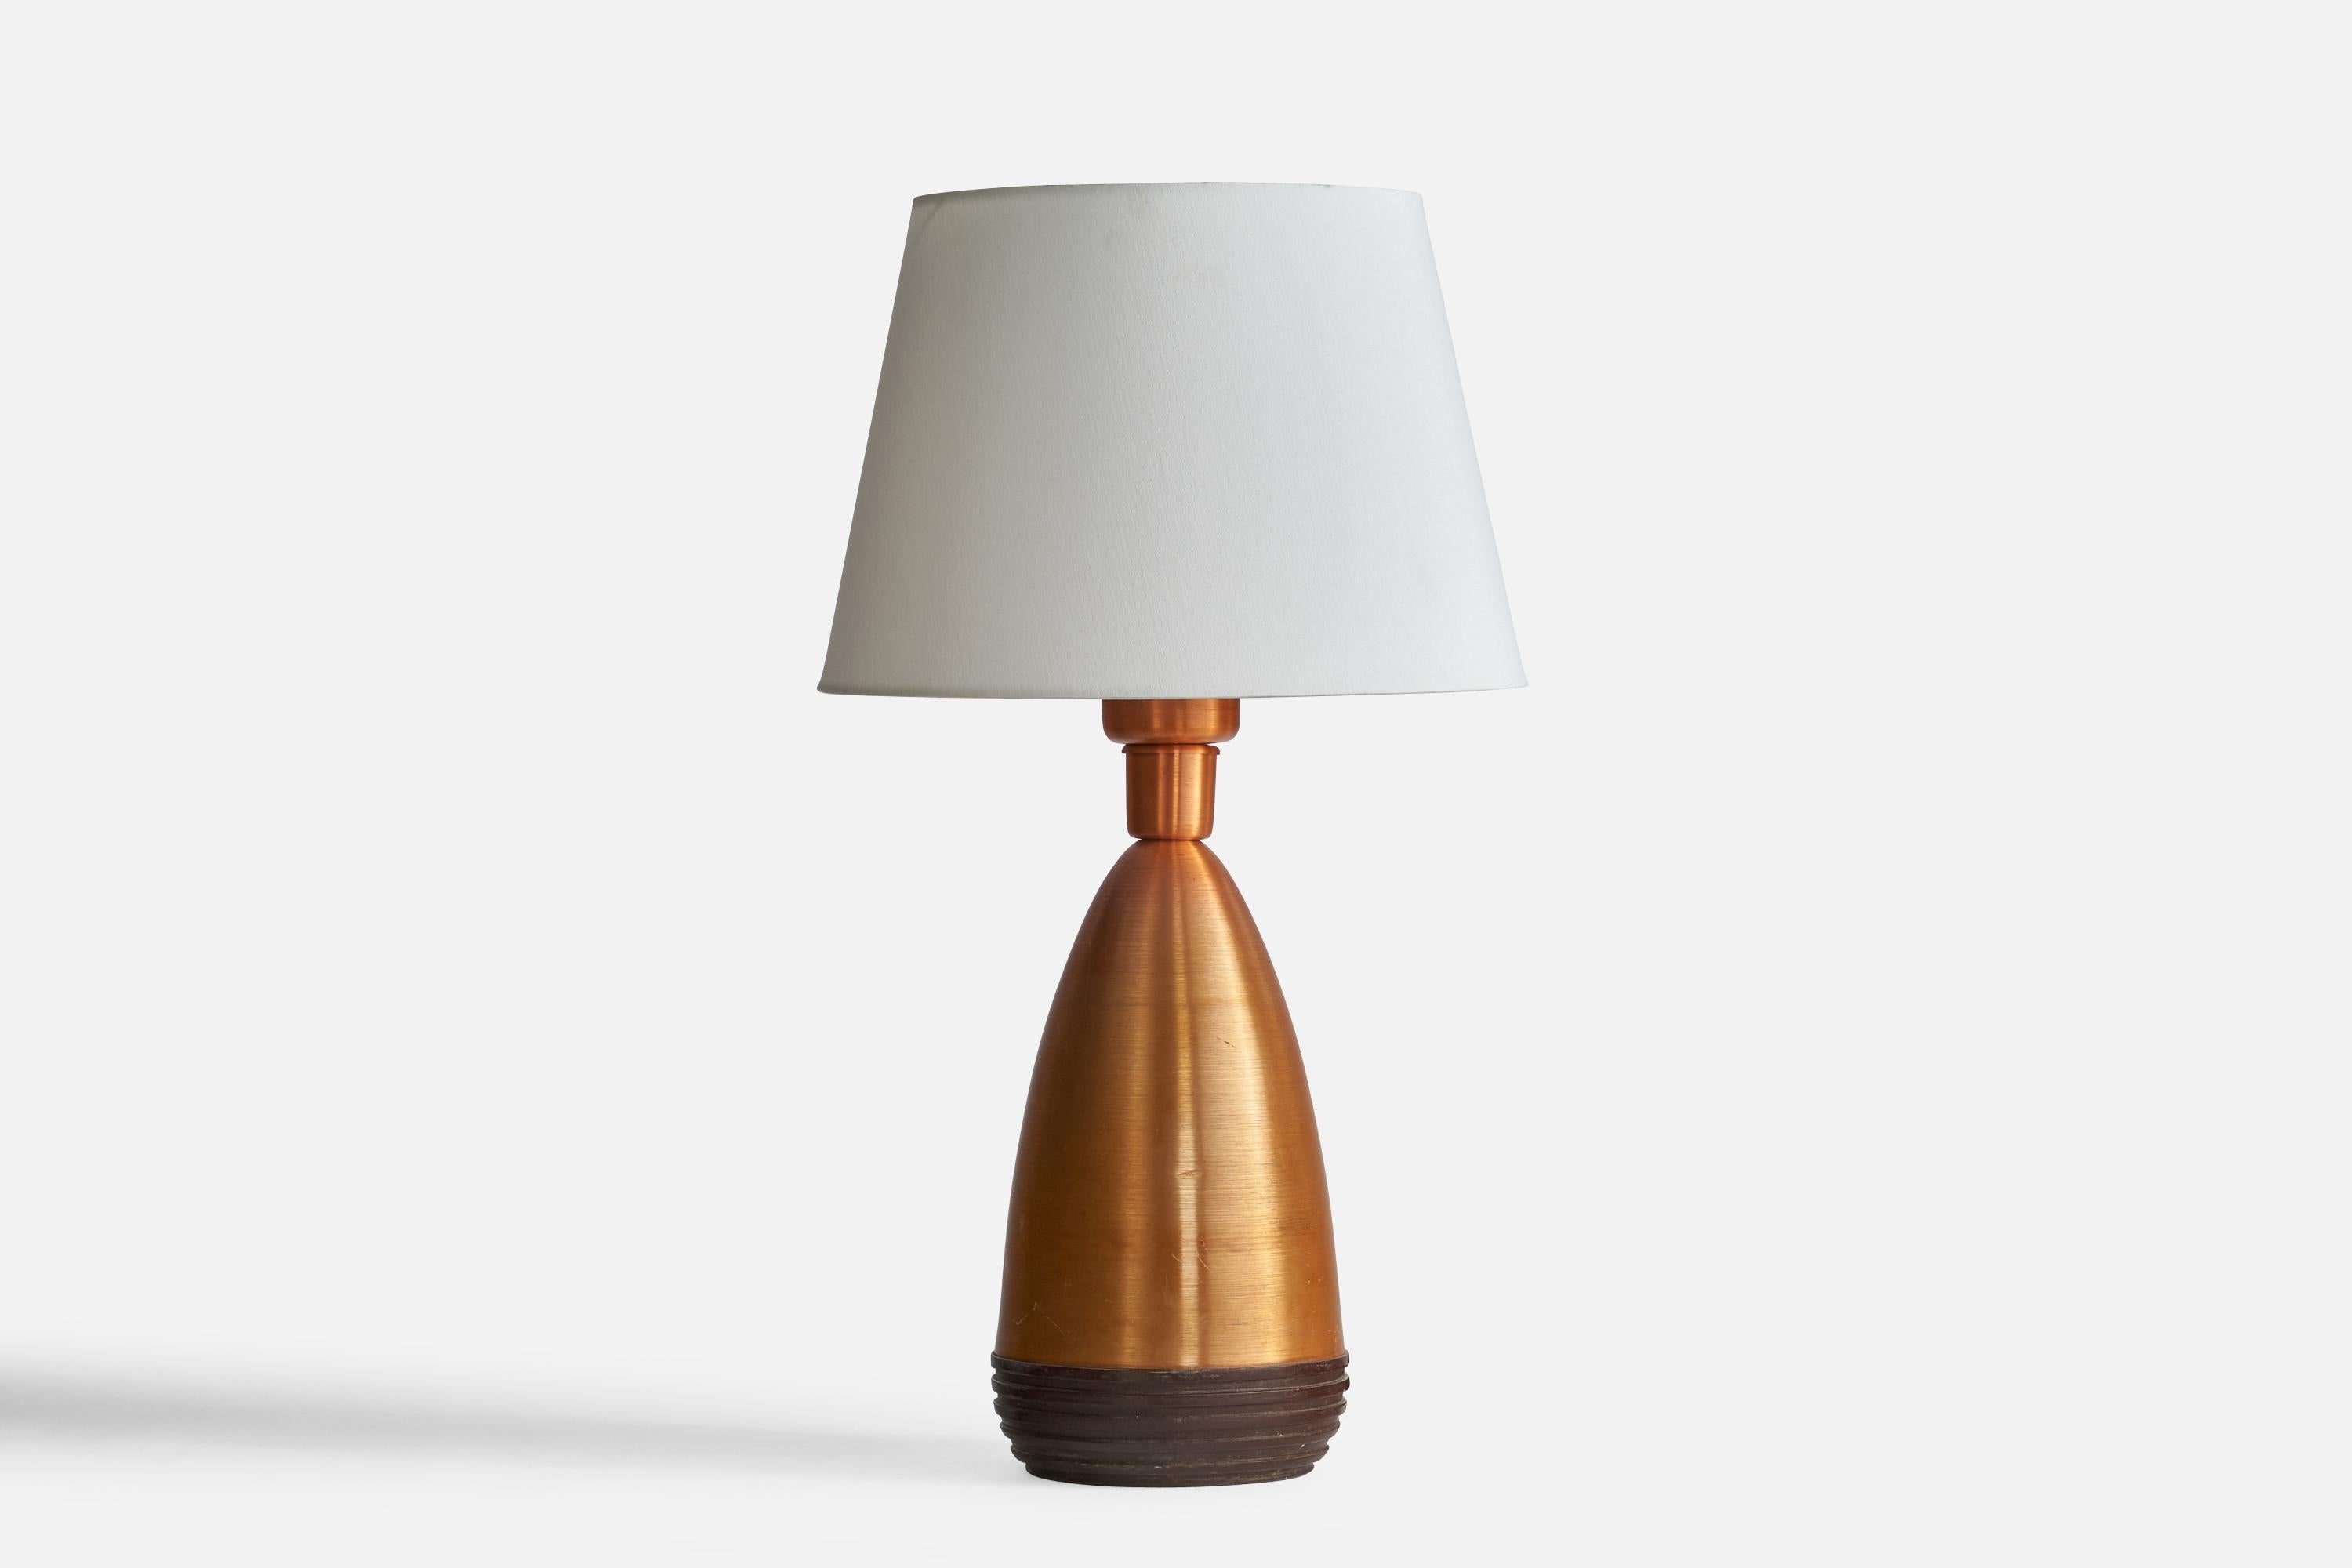 Lampe de table en cuivre et bois peint en brun, conçue et produite aux États-Unis, c.1950.

Dimensions de la lampe (pouces) : 19.75